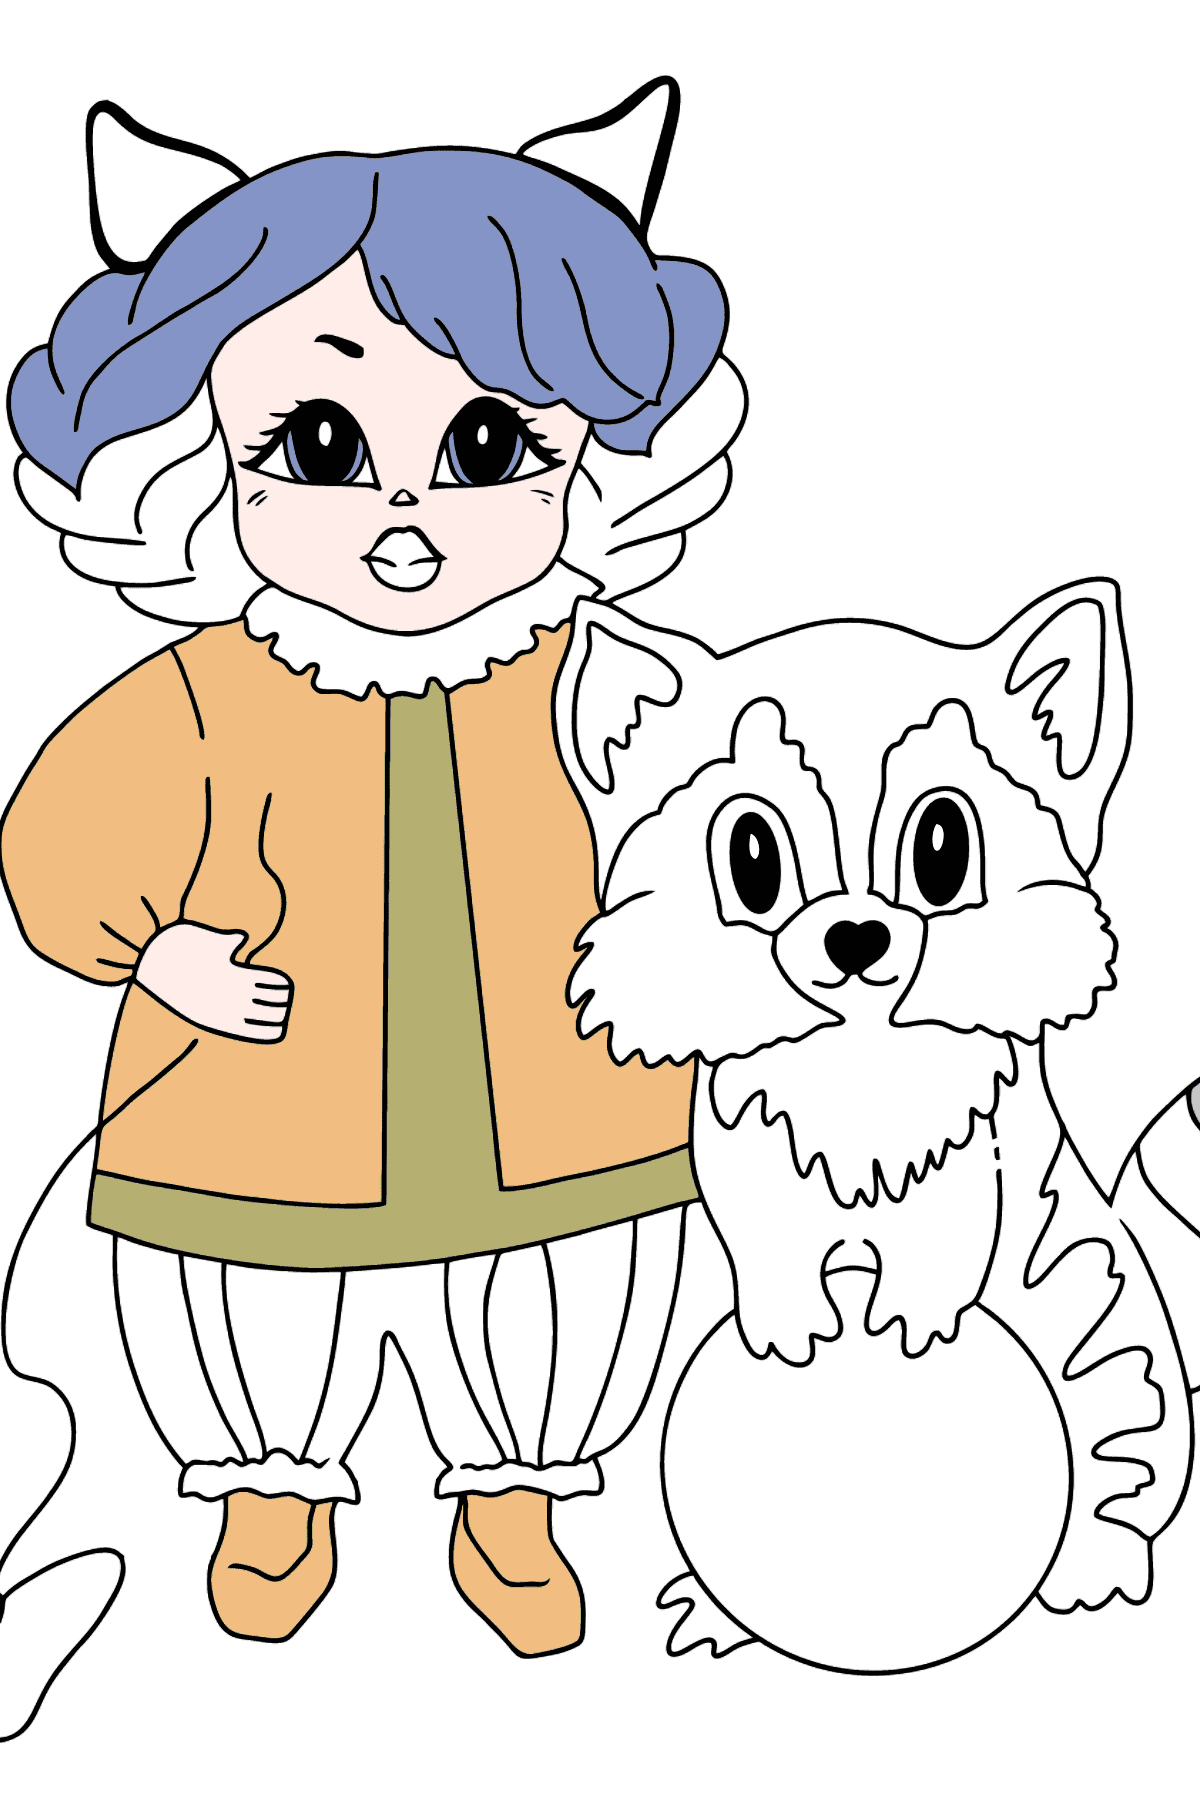 Ausmalbild - Eine Prinzessin mit einer Katze und einem Waschbär - Malvorlagen für Kinder